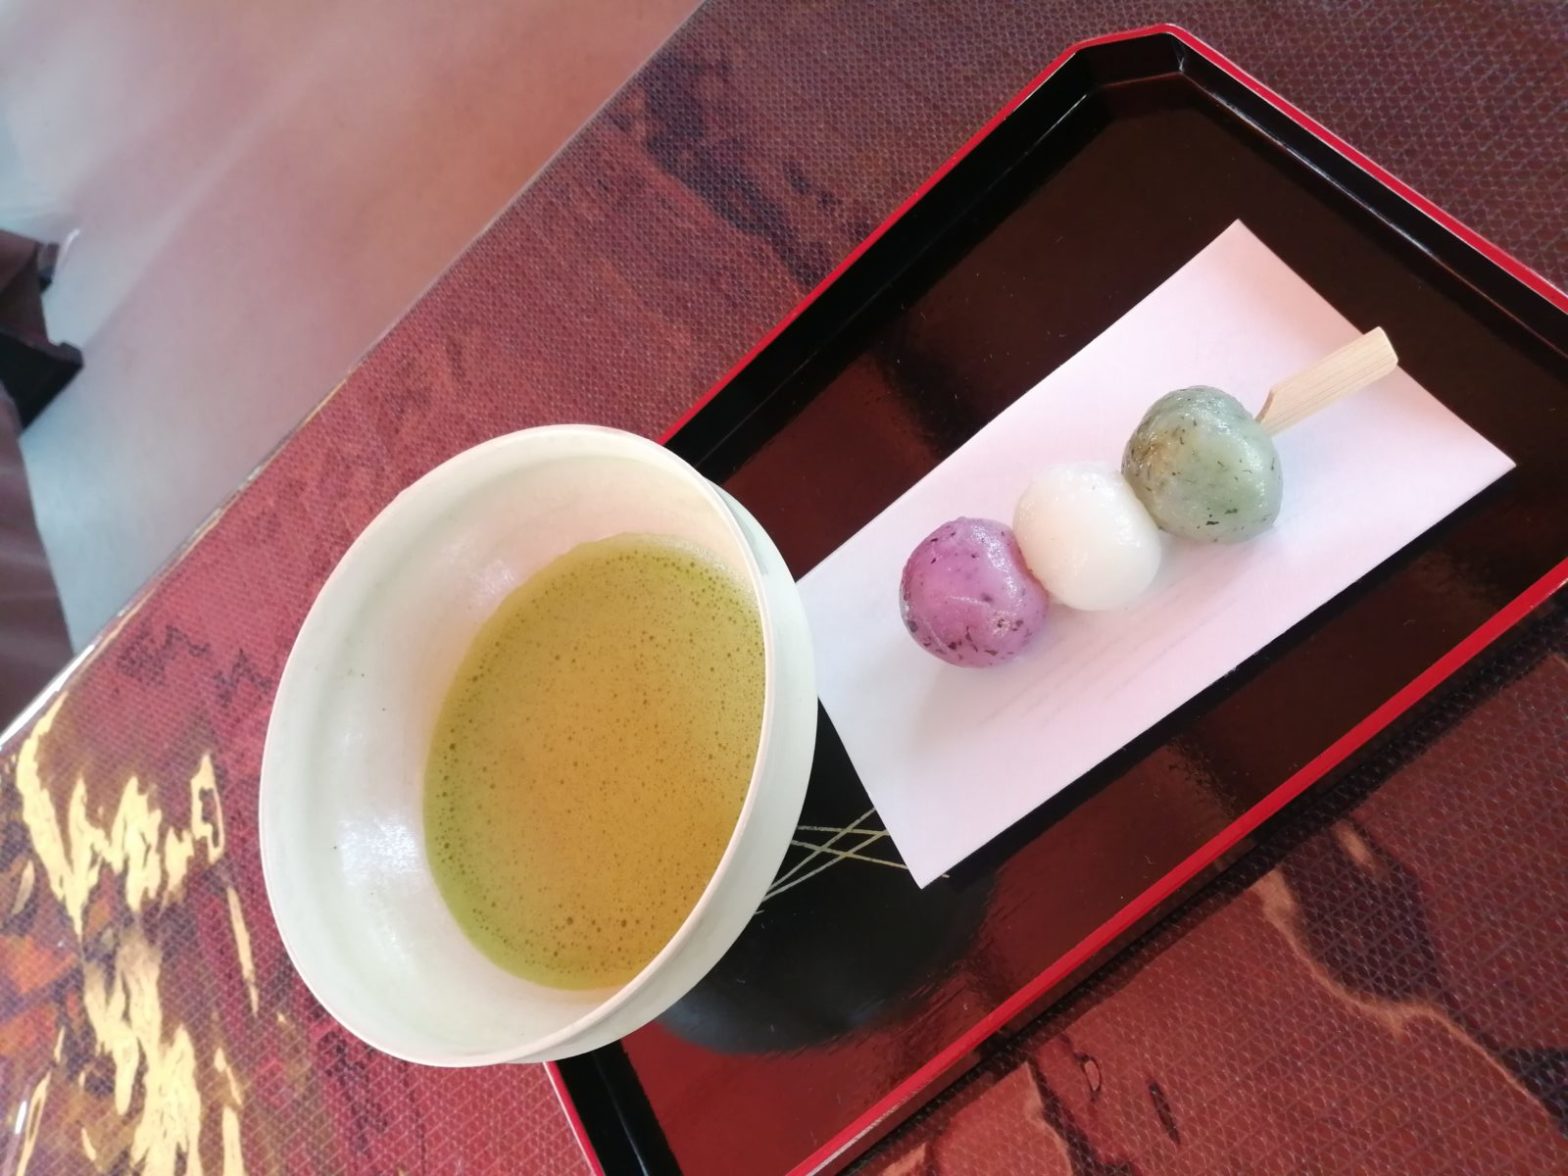 名古屋・白鳥庭園 観桜会 4月1日 山桜の席のお茶とお菓子の花見団子の画像